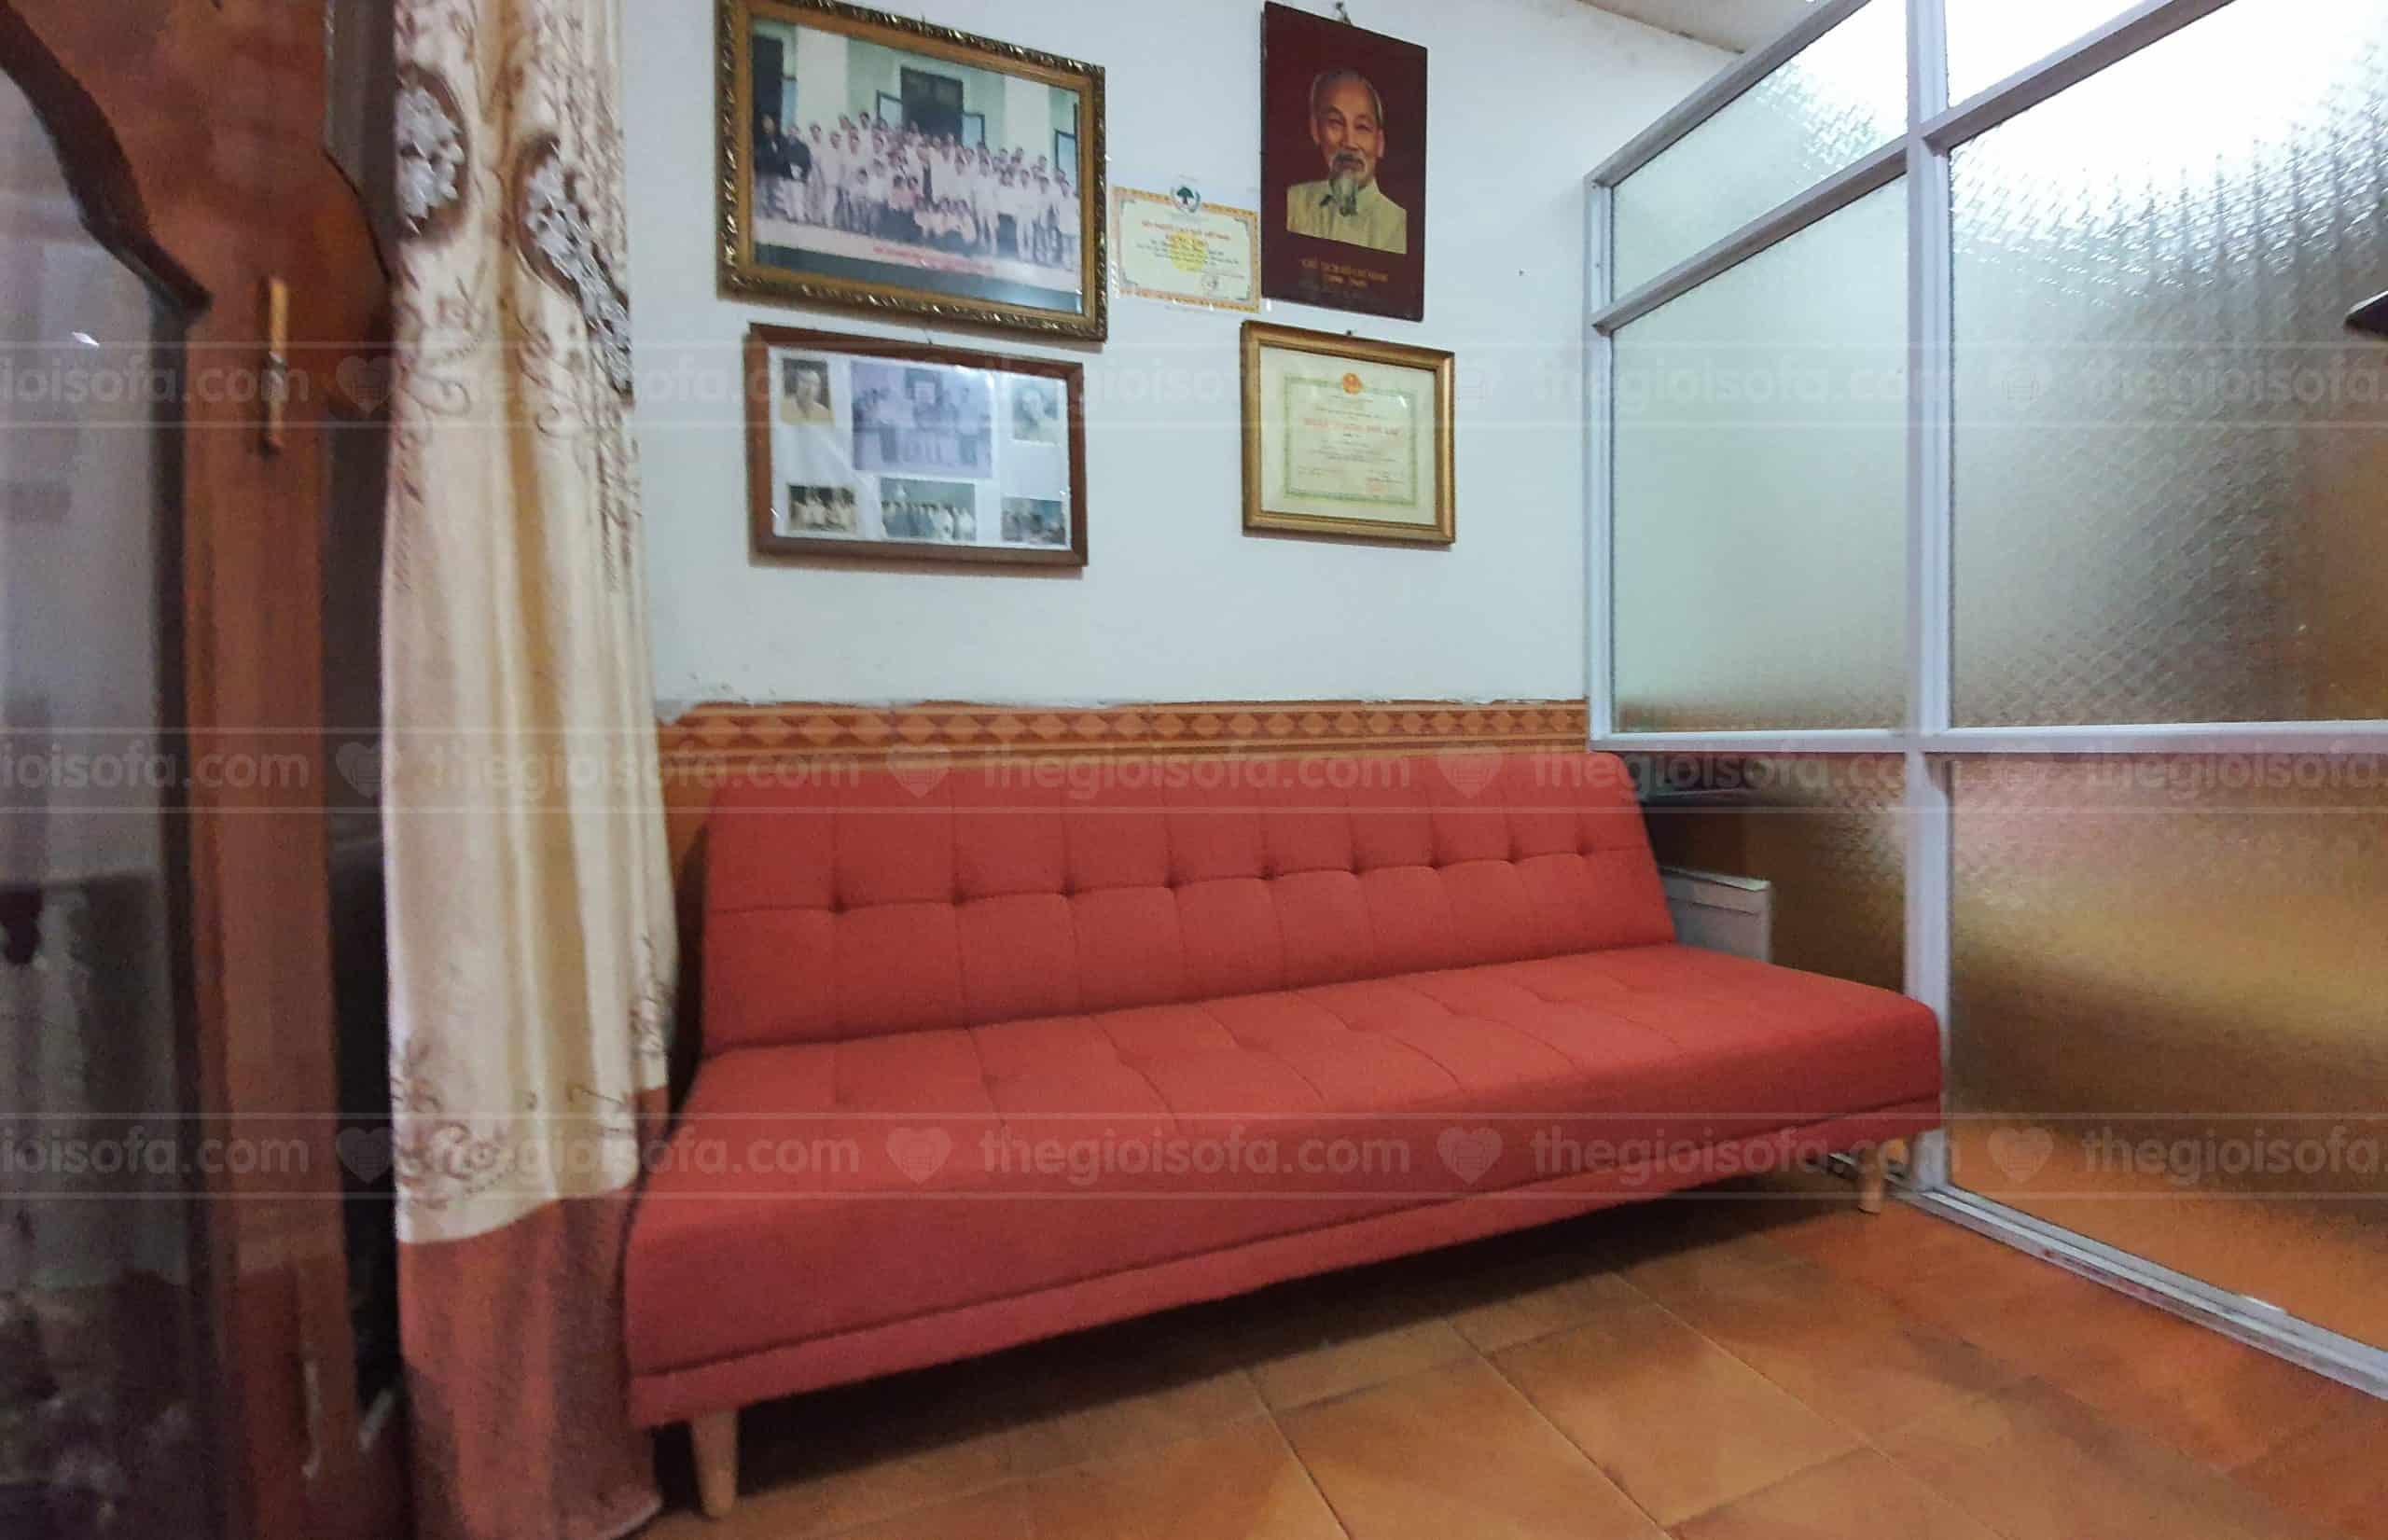 Giao hàng sofa Sofaland Vera Oranges cho chú Hùng ở Vũ Ngọc Phan, Đống Đa, Hà Nội